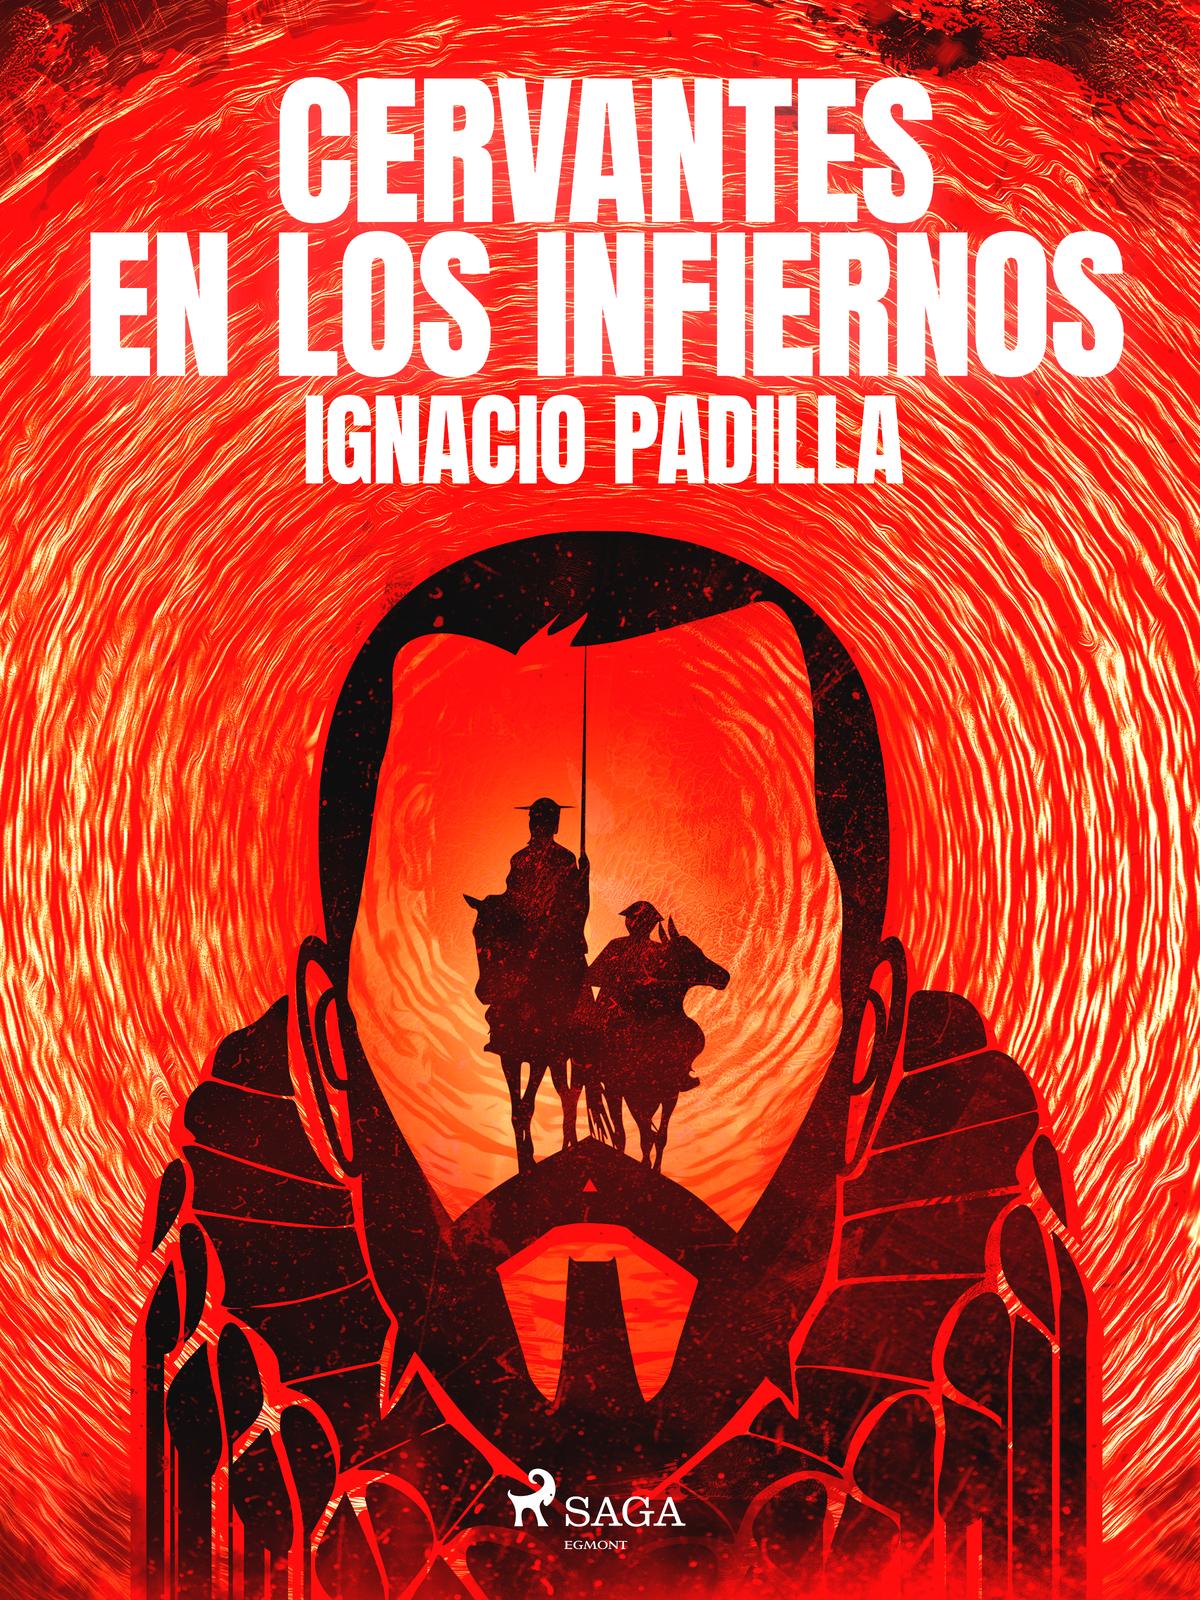 Cervantes en los infiernos Copyright 2011 2022 Ignacio Padilla and SAGA - photo 1